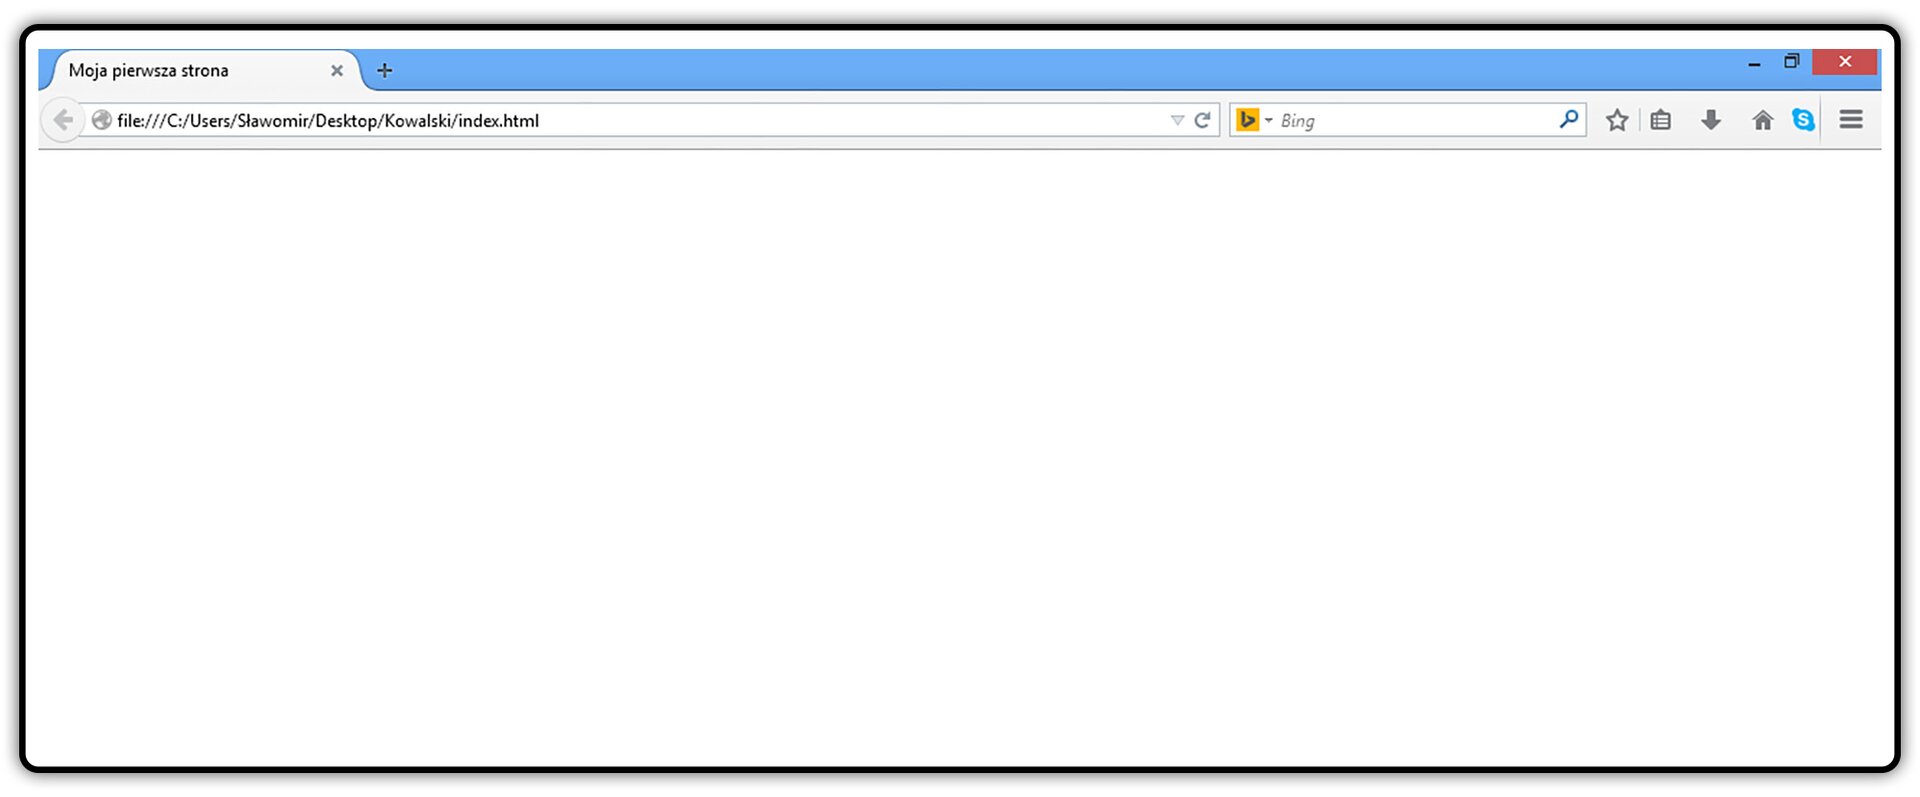 Zrzut okna przeglądarki z widocznym tytułem dokumentu HTML na górnym pasku okna przeglądarki widoczny .